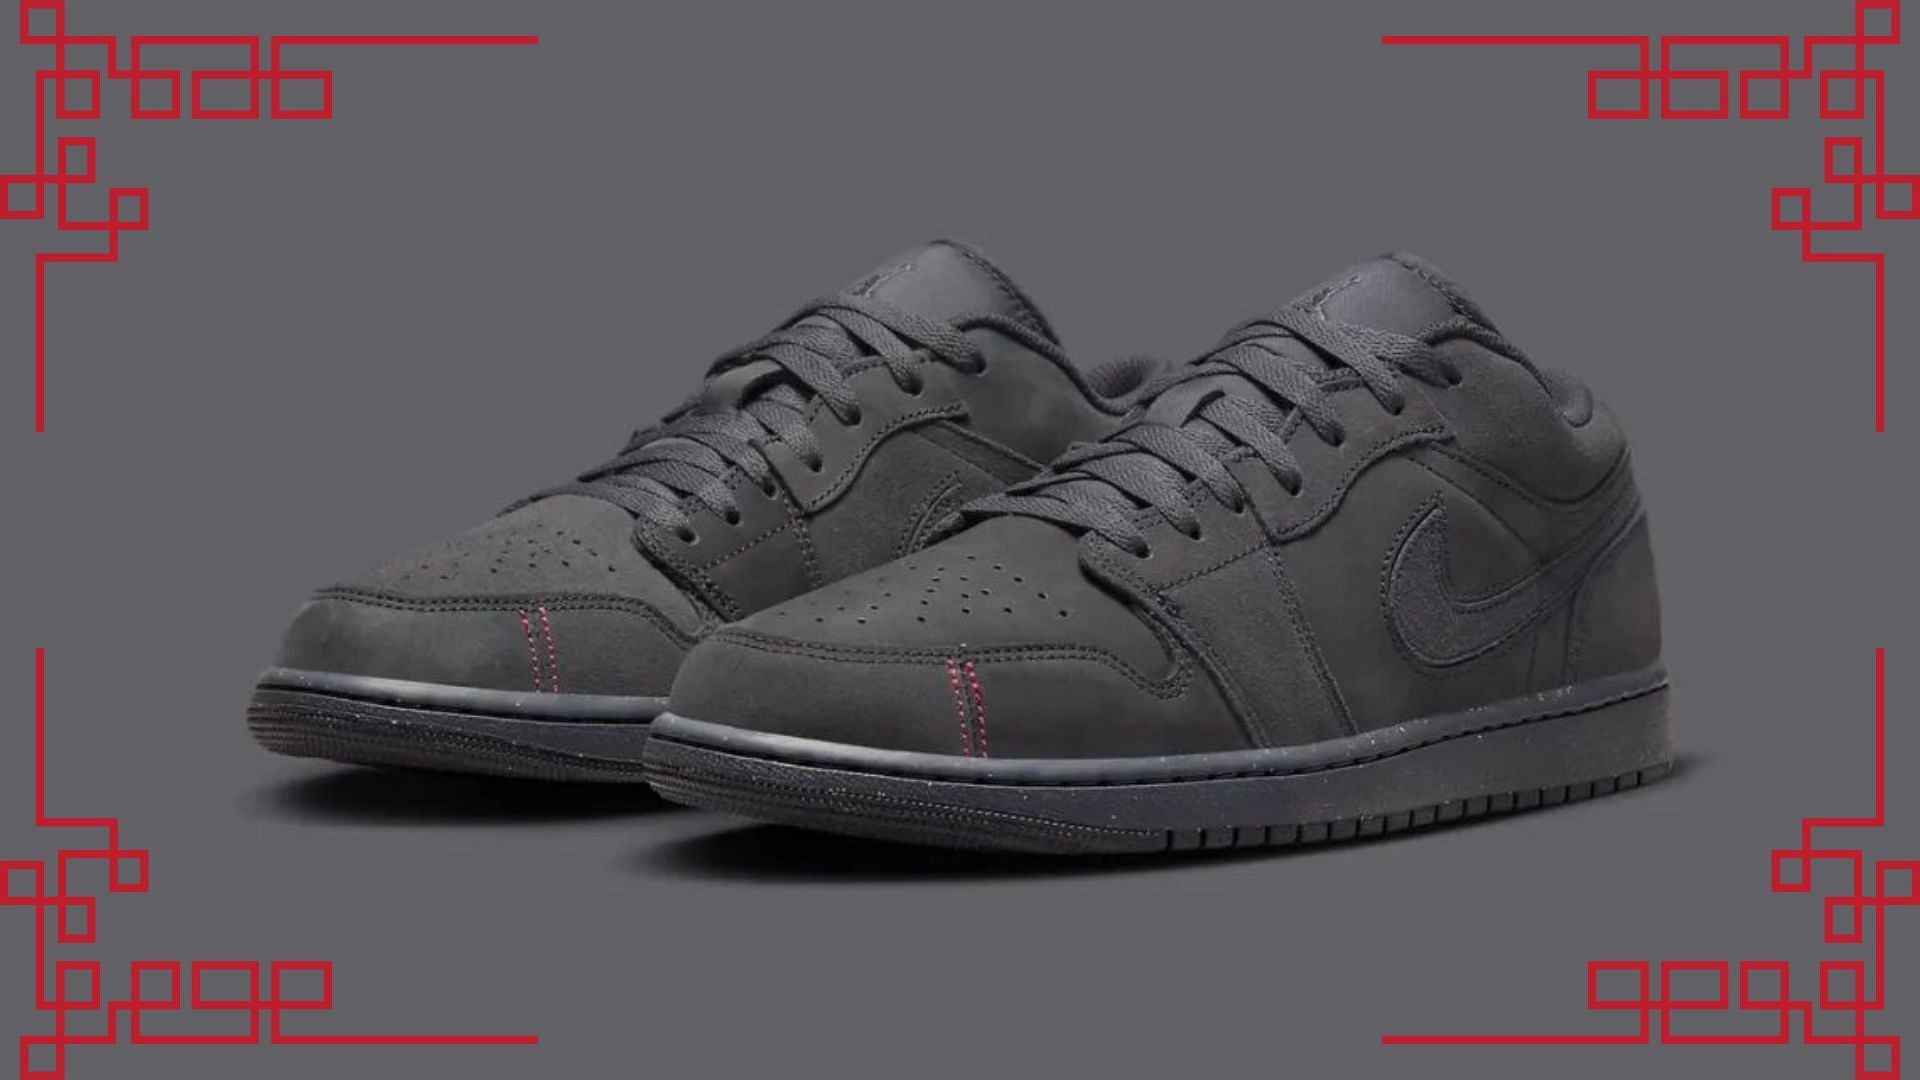 Air Jordan 1 Low sneakers (Image via Nike)